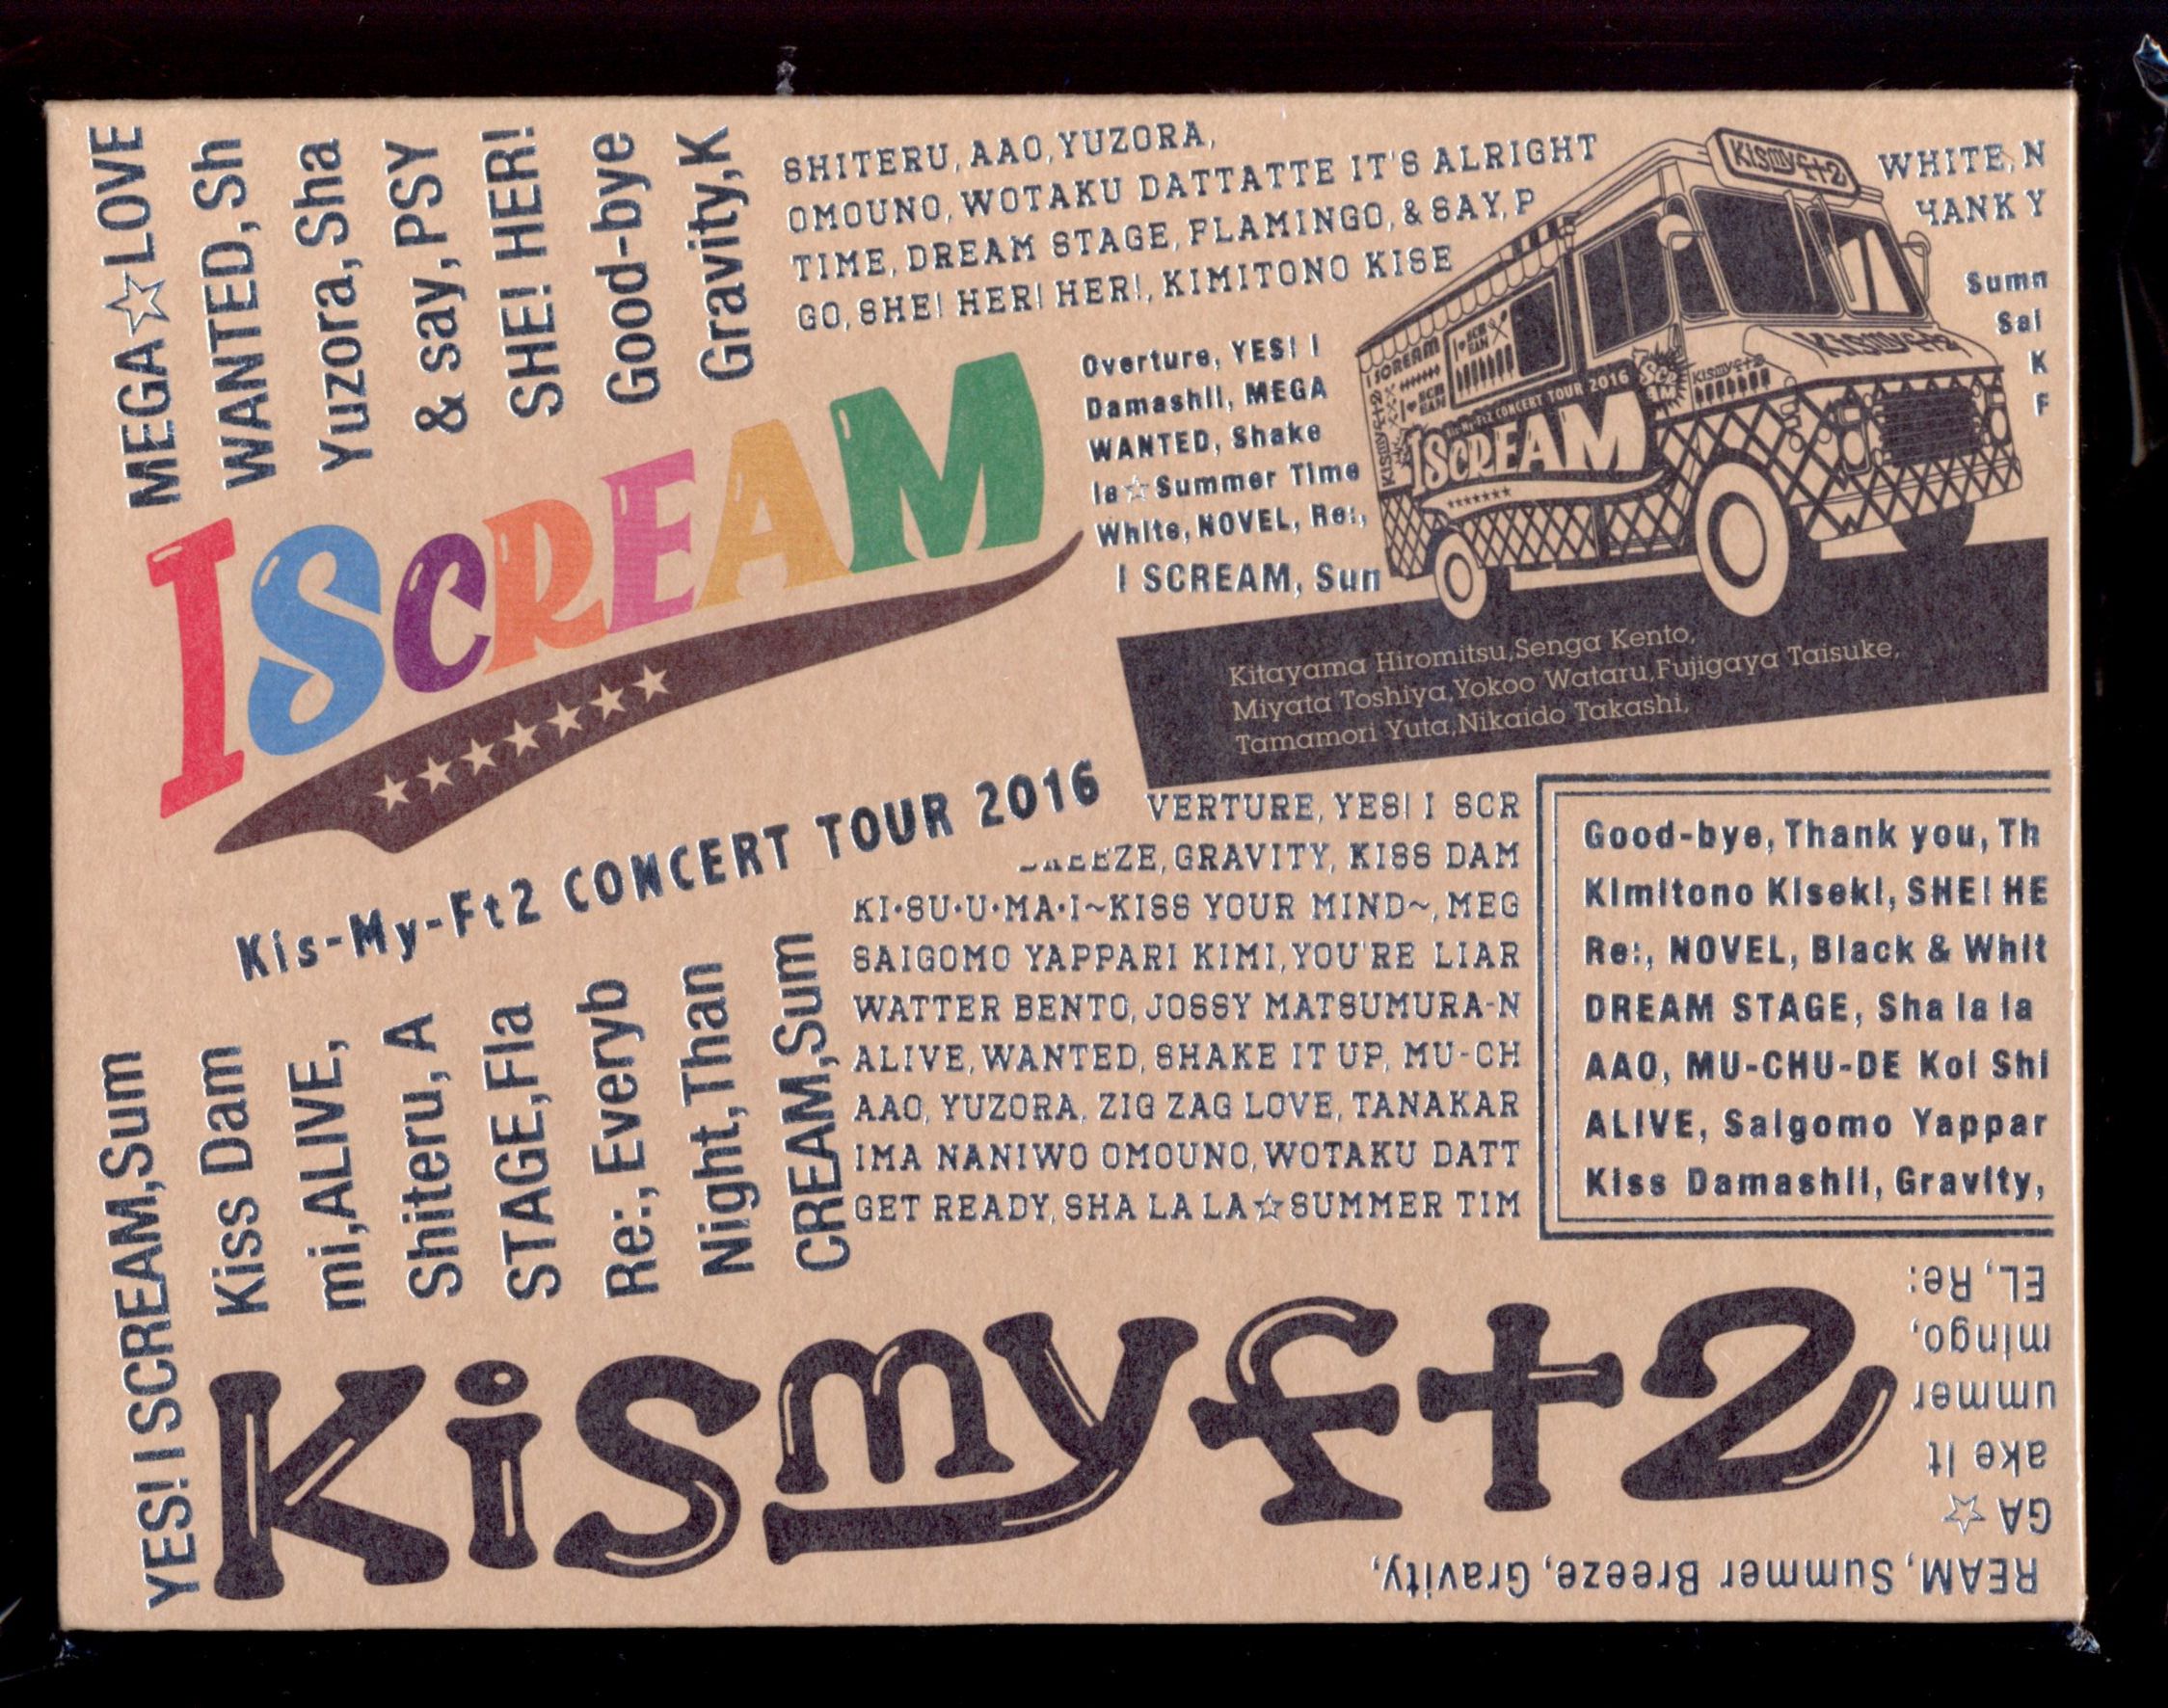 CONCERT TOUR 2016 I SCREAM Blu-ray www.krzysztofbialy.com